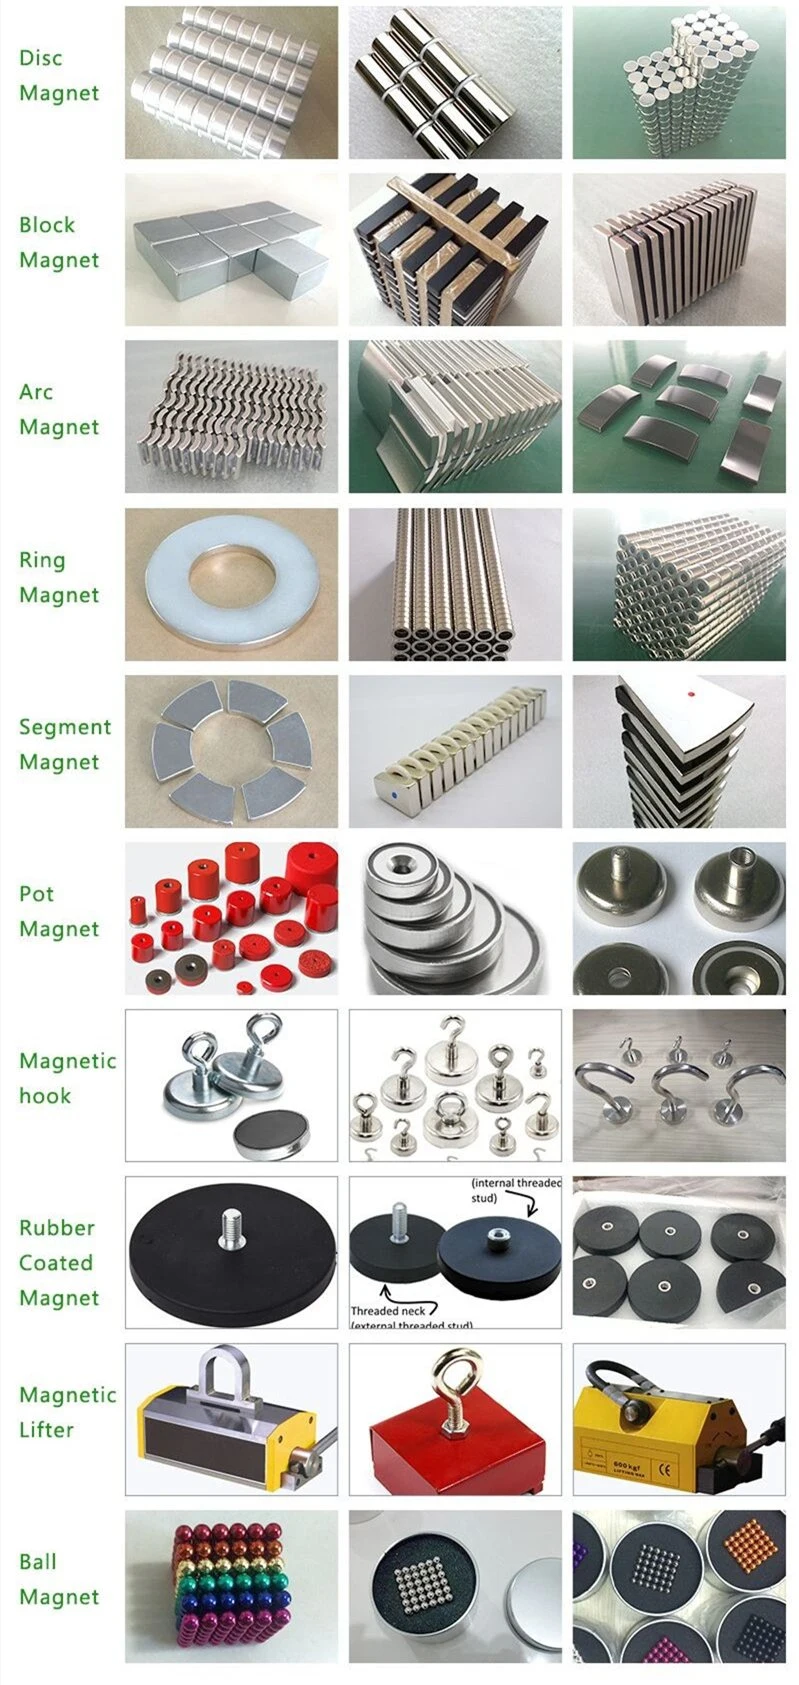 Samarium Cobalt Magnets High Temperature Resistant Disc Round SmCo Magnet